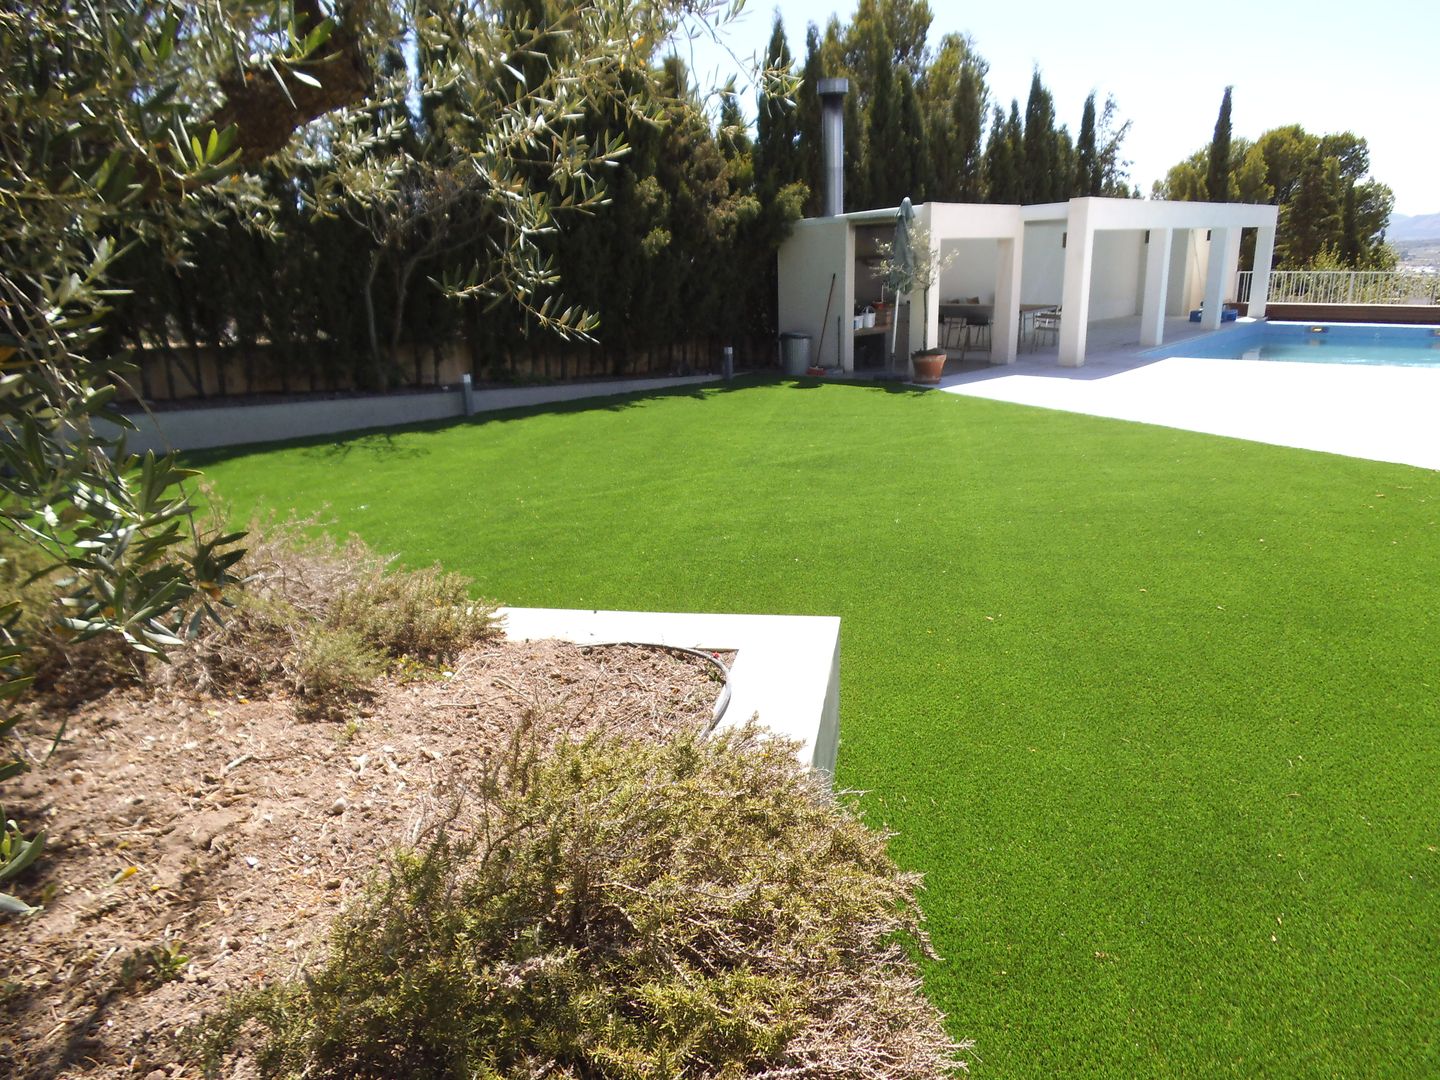 Proceso de instalación de césped artificial Albergrass para una obra en la ciudad de Ibi, Alicante, Albergrass césped tecnológico Albergrass césped tecnológico Mediterranean style garden